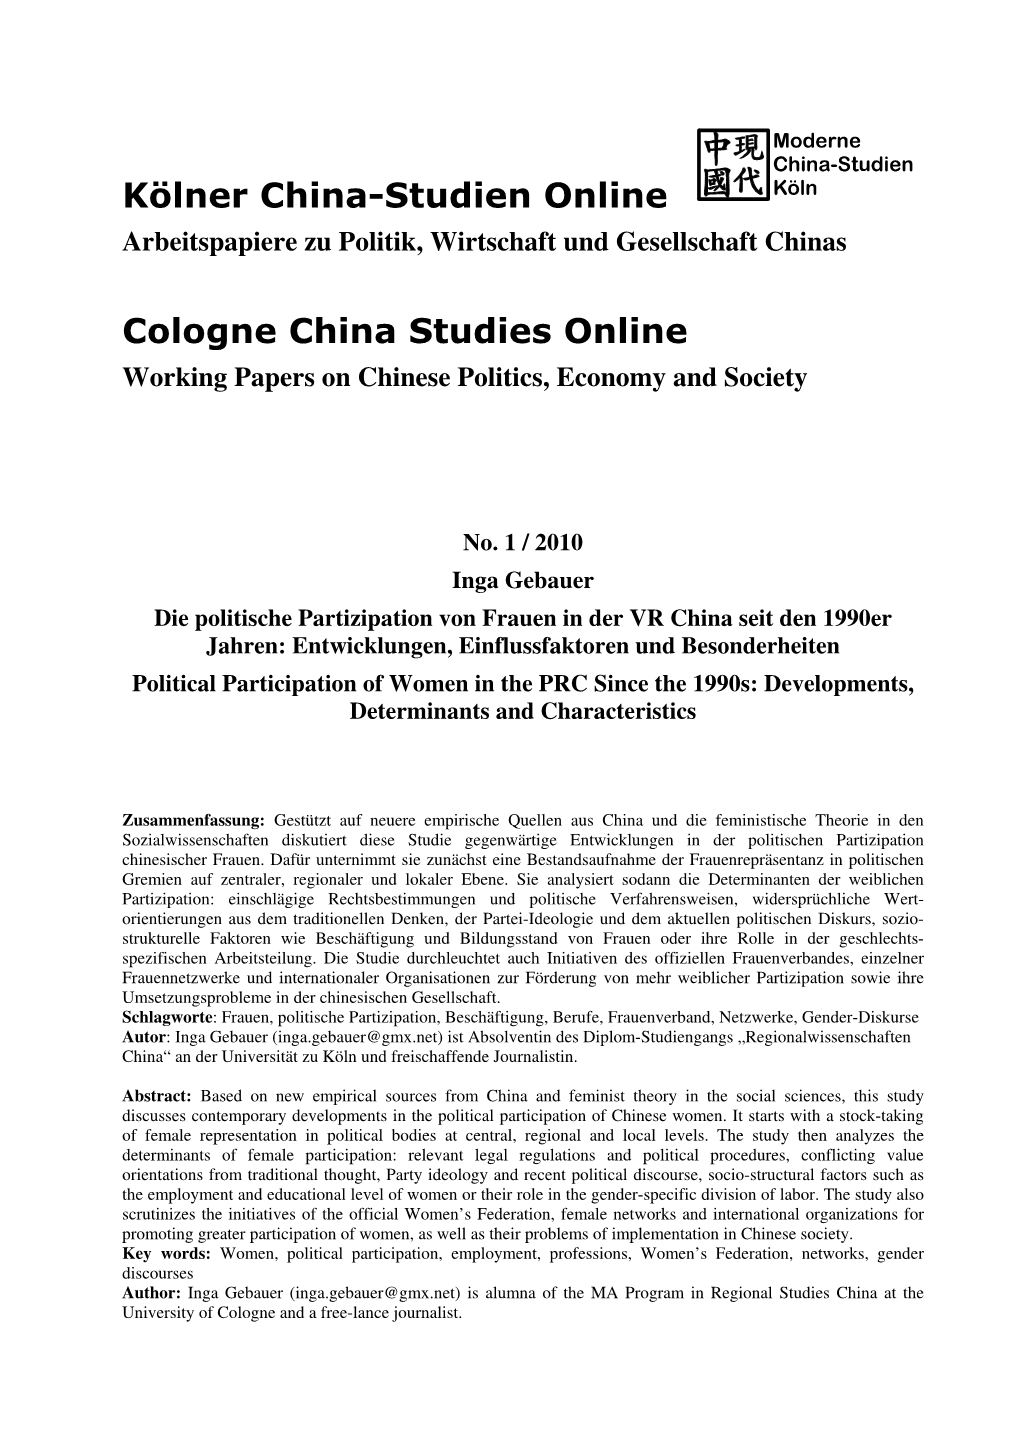 Arbeitspapiere Zu Politik, Wirtschaft Und Gesellschaft Chinas